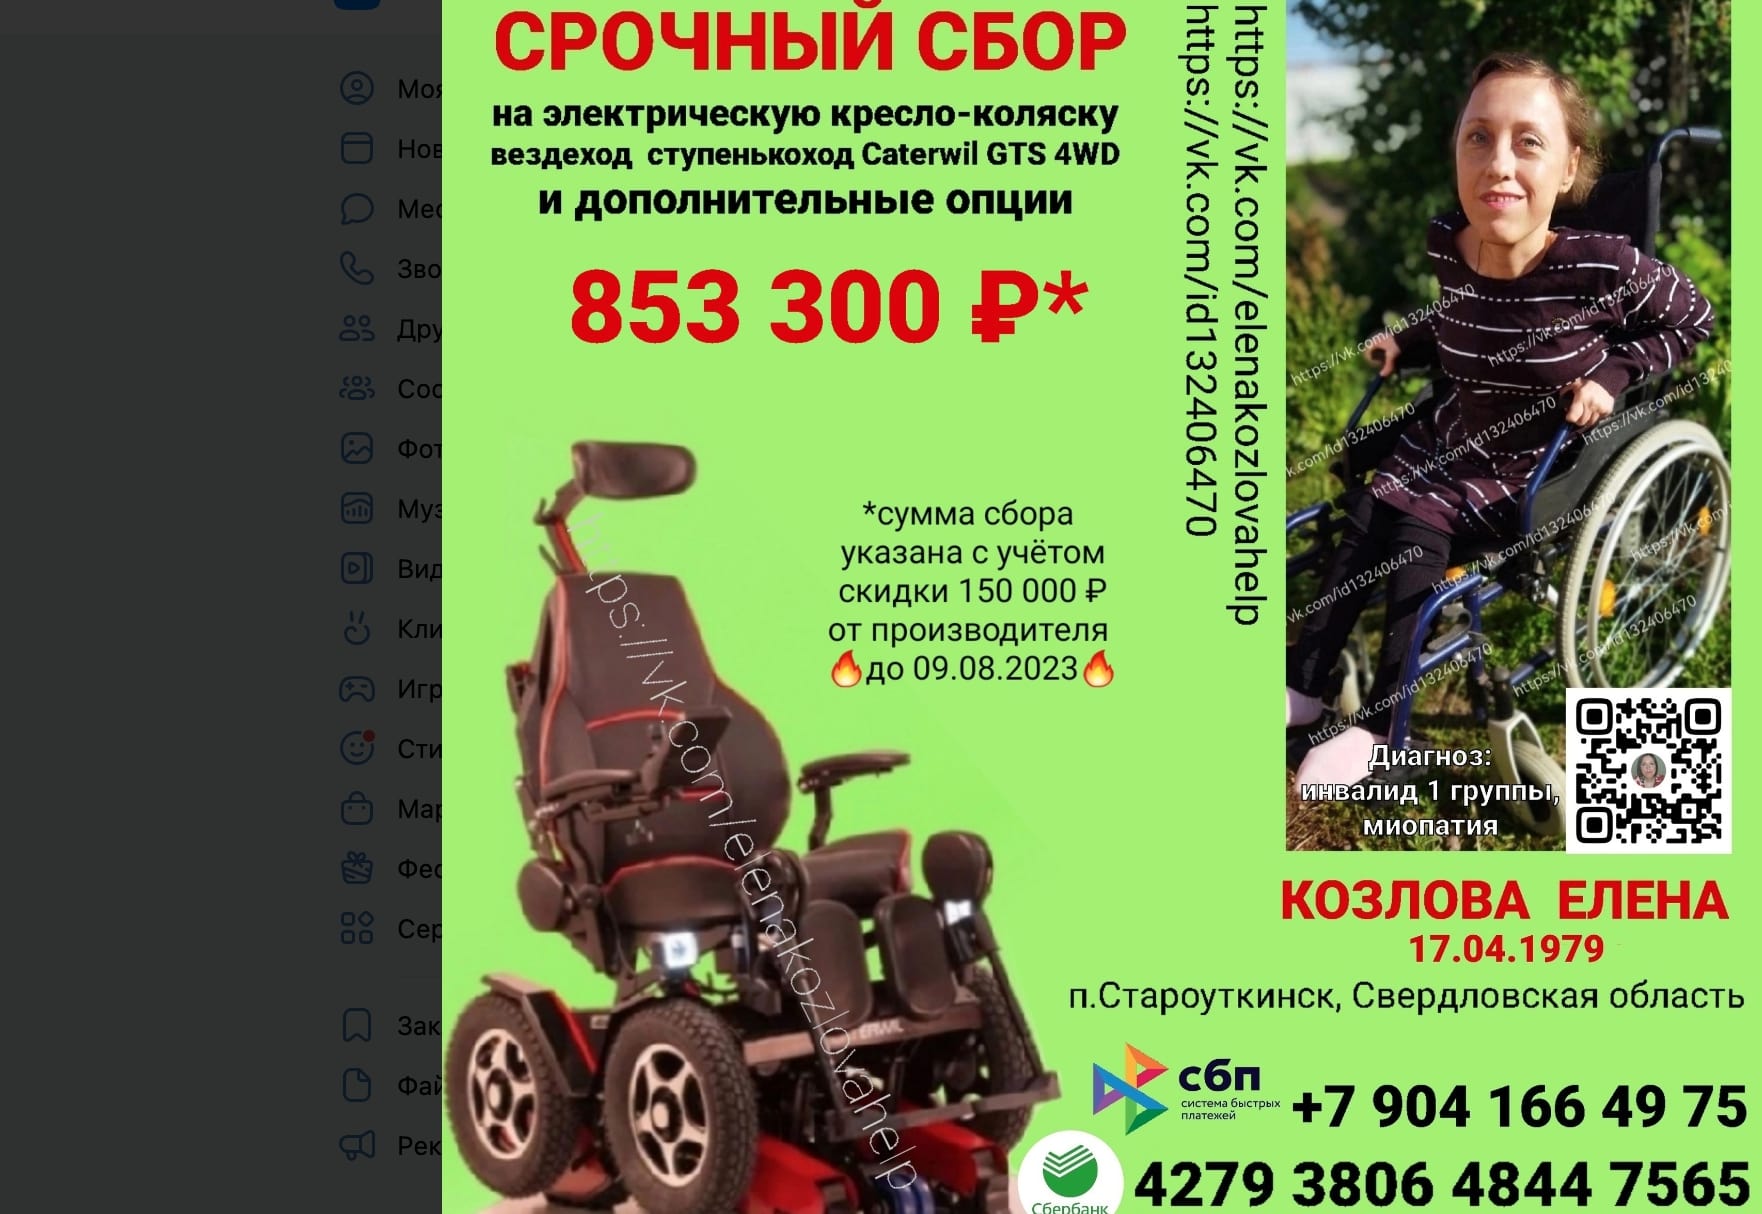 Жители Первоуральска собирают деньги, чтобы купить коляску инвалиду